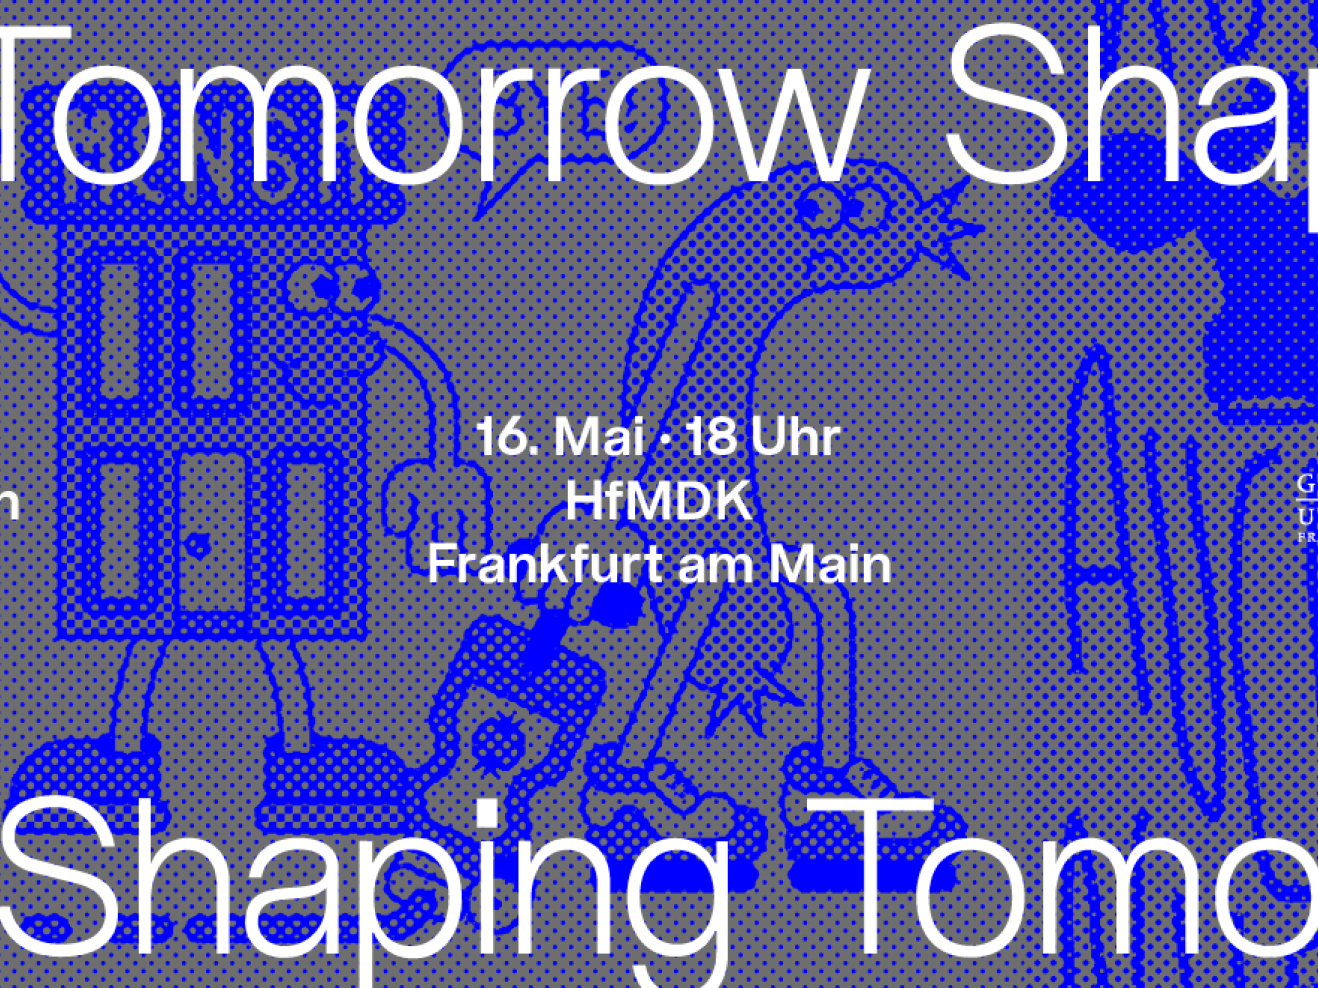 Ein horizontales Design mit blauen Punkten auf grauem Untergrund. Oben und unten steht wiederholt "Shaping Tomorrow". Auf mittiger Höhe steht links "Plakate für nachhaltige Transformation an Hochschulen", in der Mitte "16. Mai - 18 Uhr / HfMDK / Frankfurt am Main" und rechts sind die Logos der drei Hochschulen abgebildet.